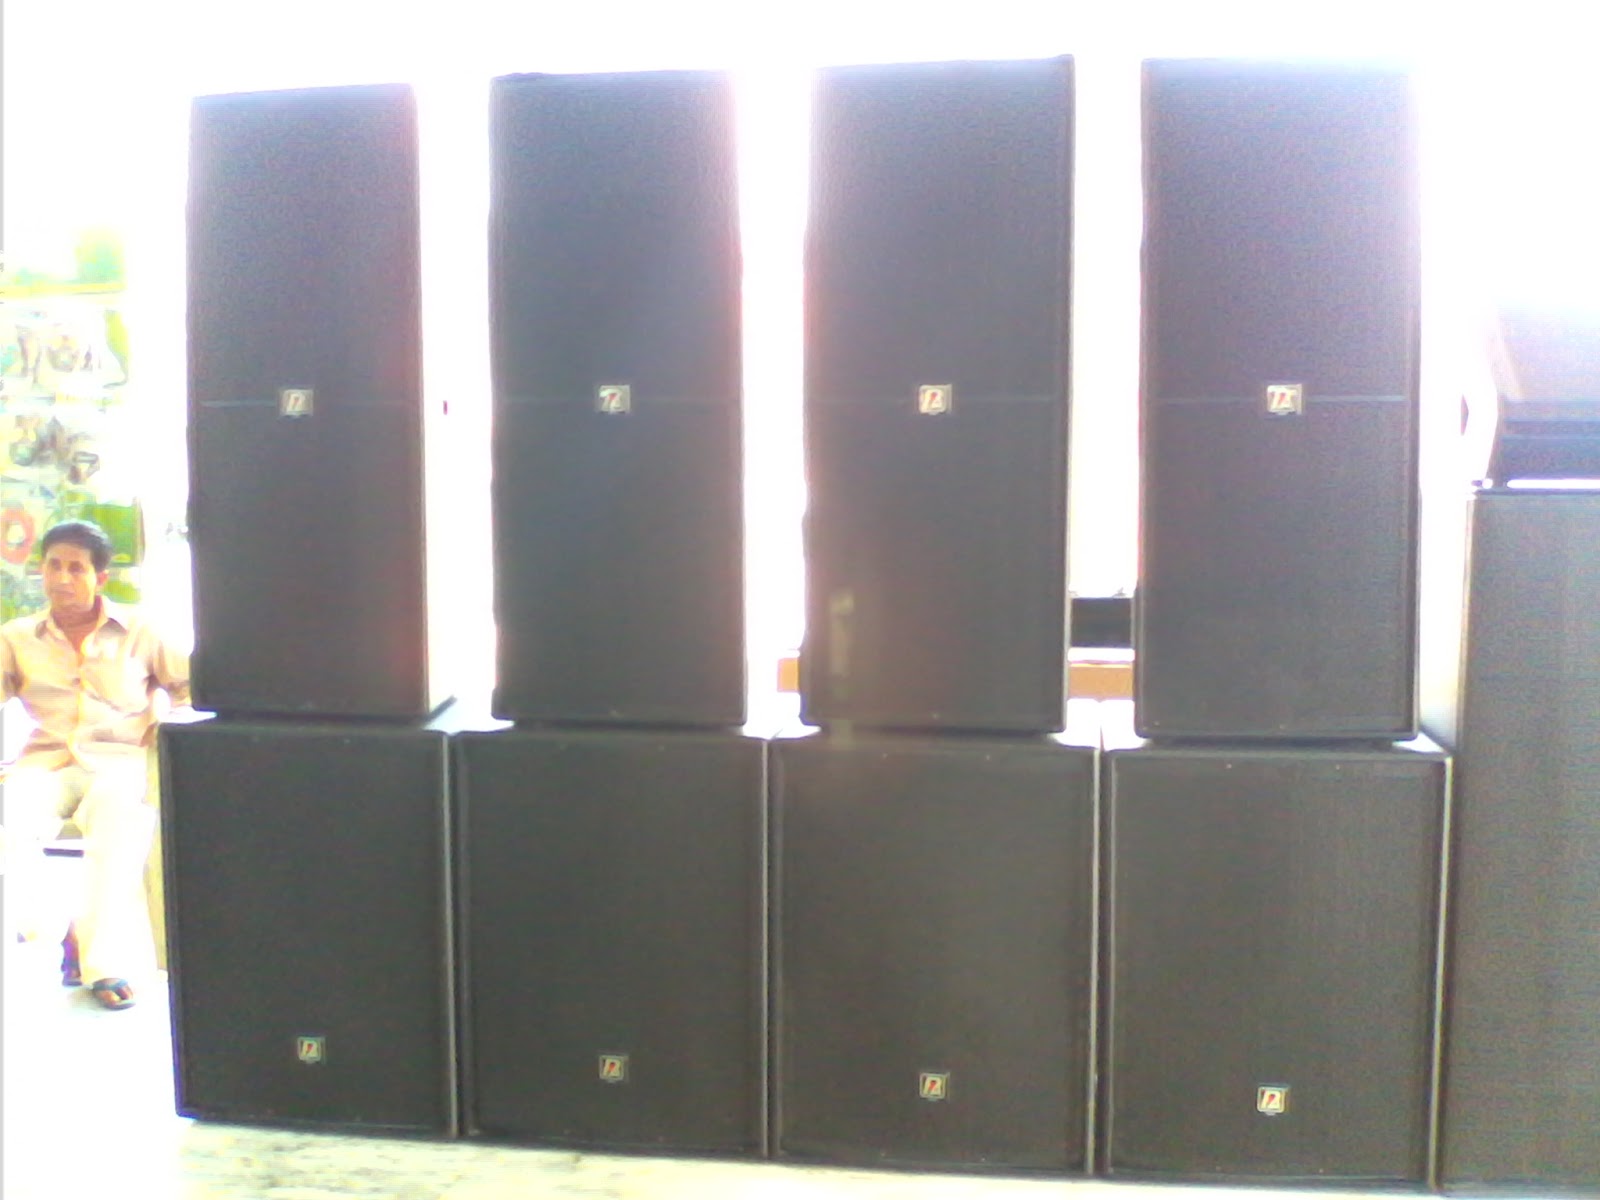 dj베이스 스피커 상자 벽지,가구,방,오디오 장비,금속